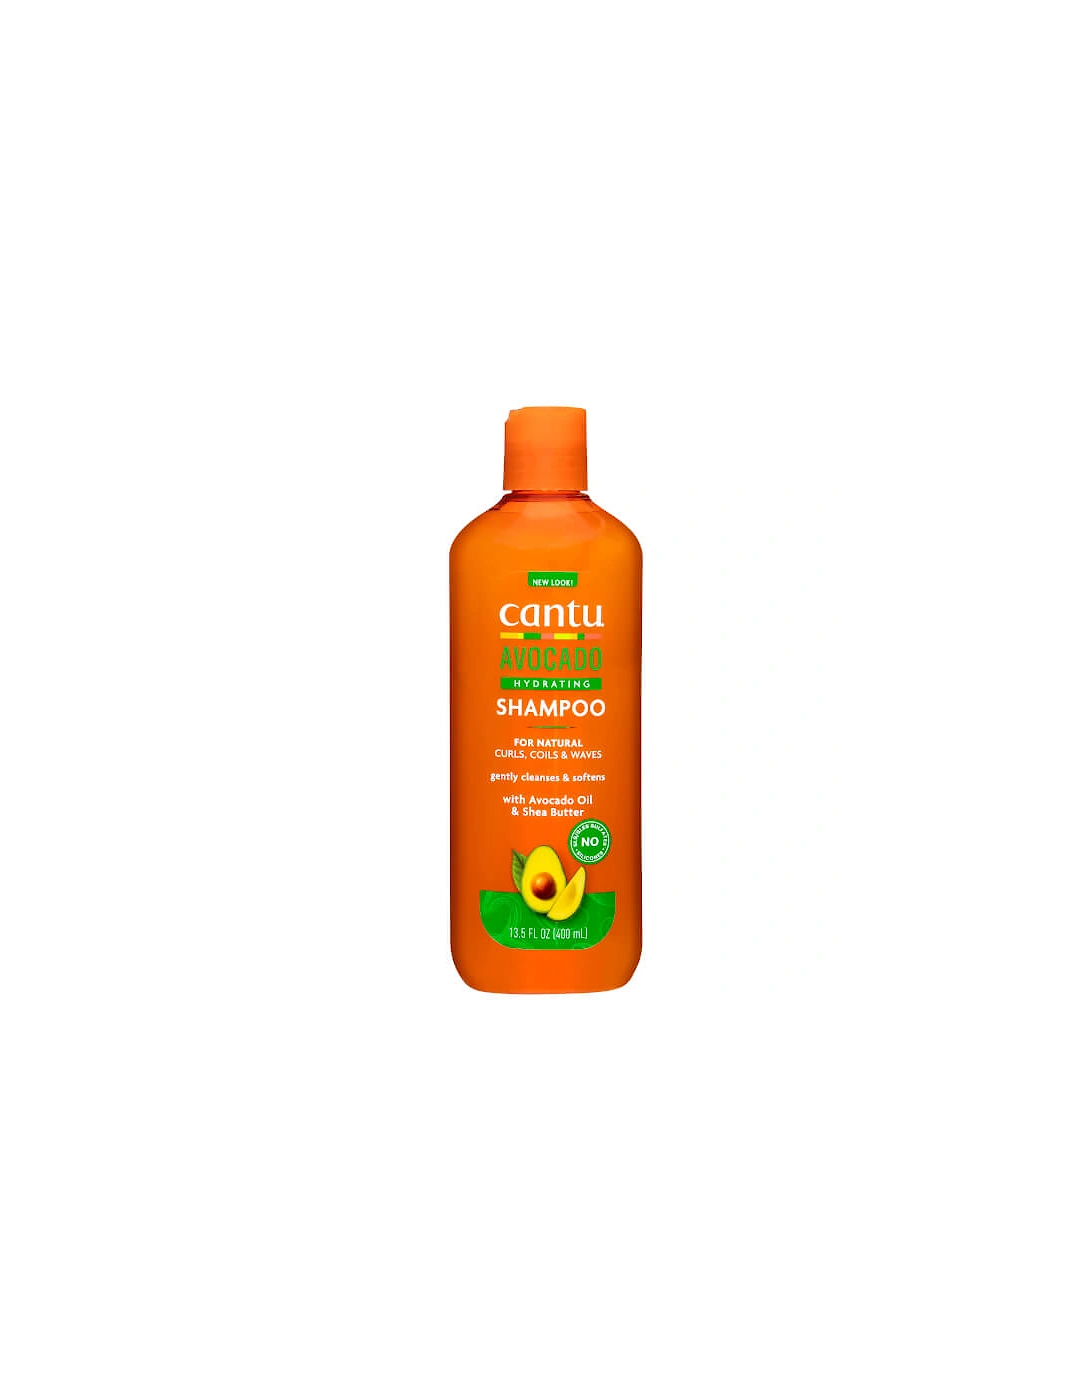 Avocado Hydrating Shampoo 400ml - Cantu, 2 of 1